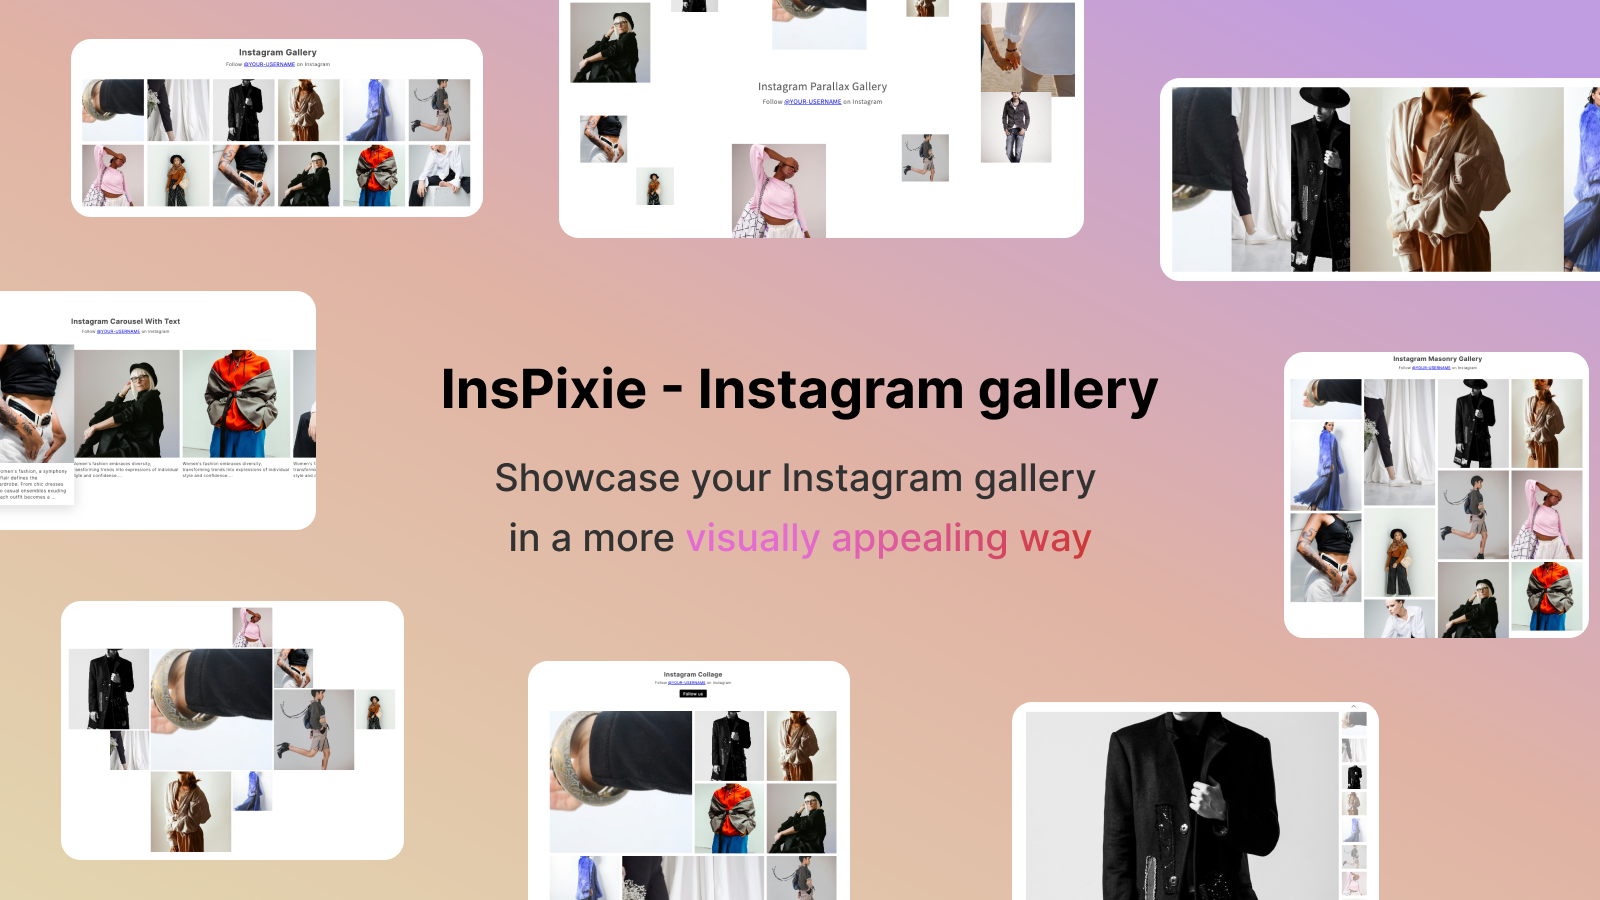 Vis Instagram feed på en mere visuelt tiltalende måde